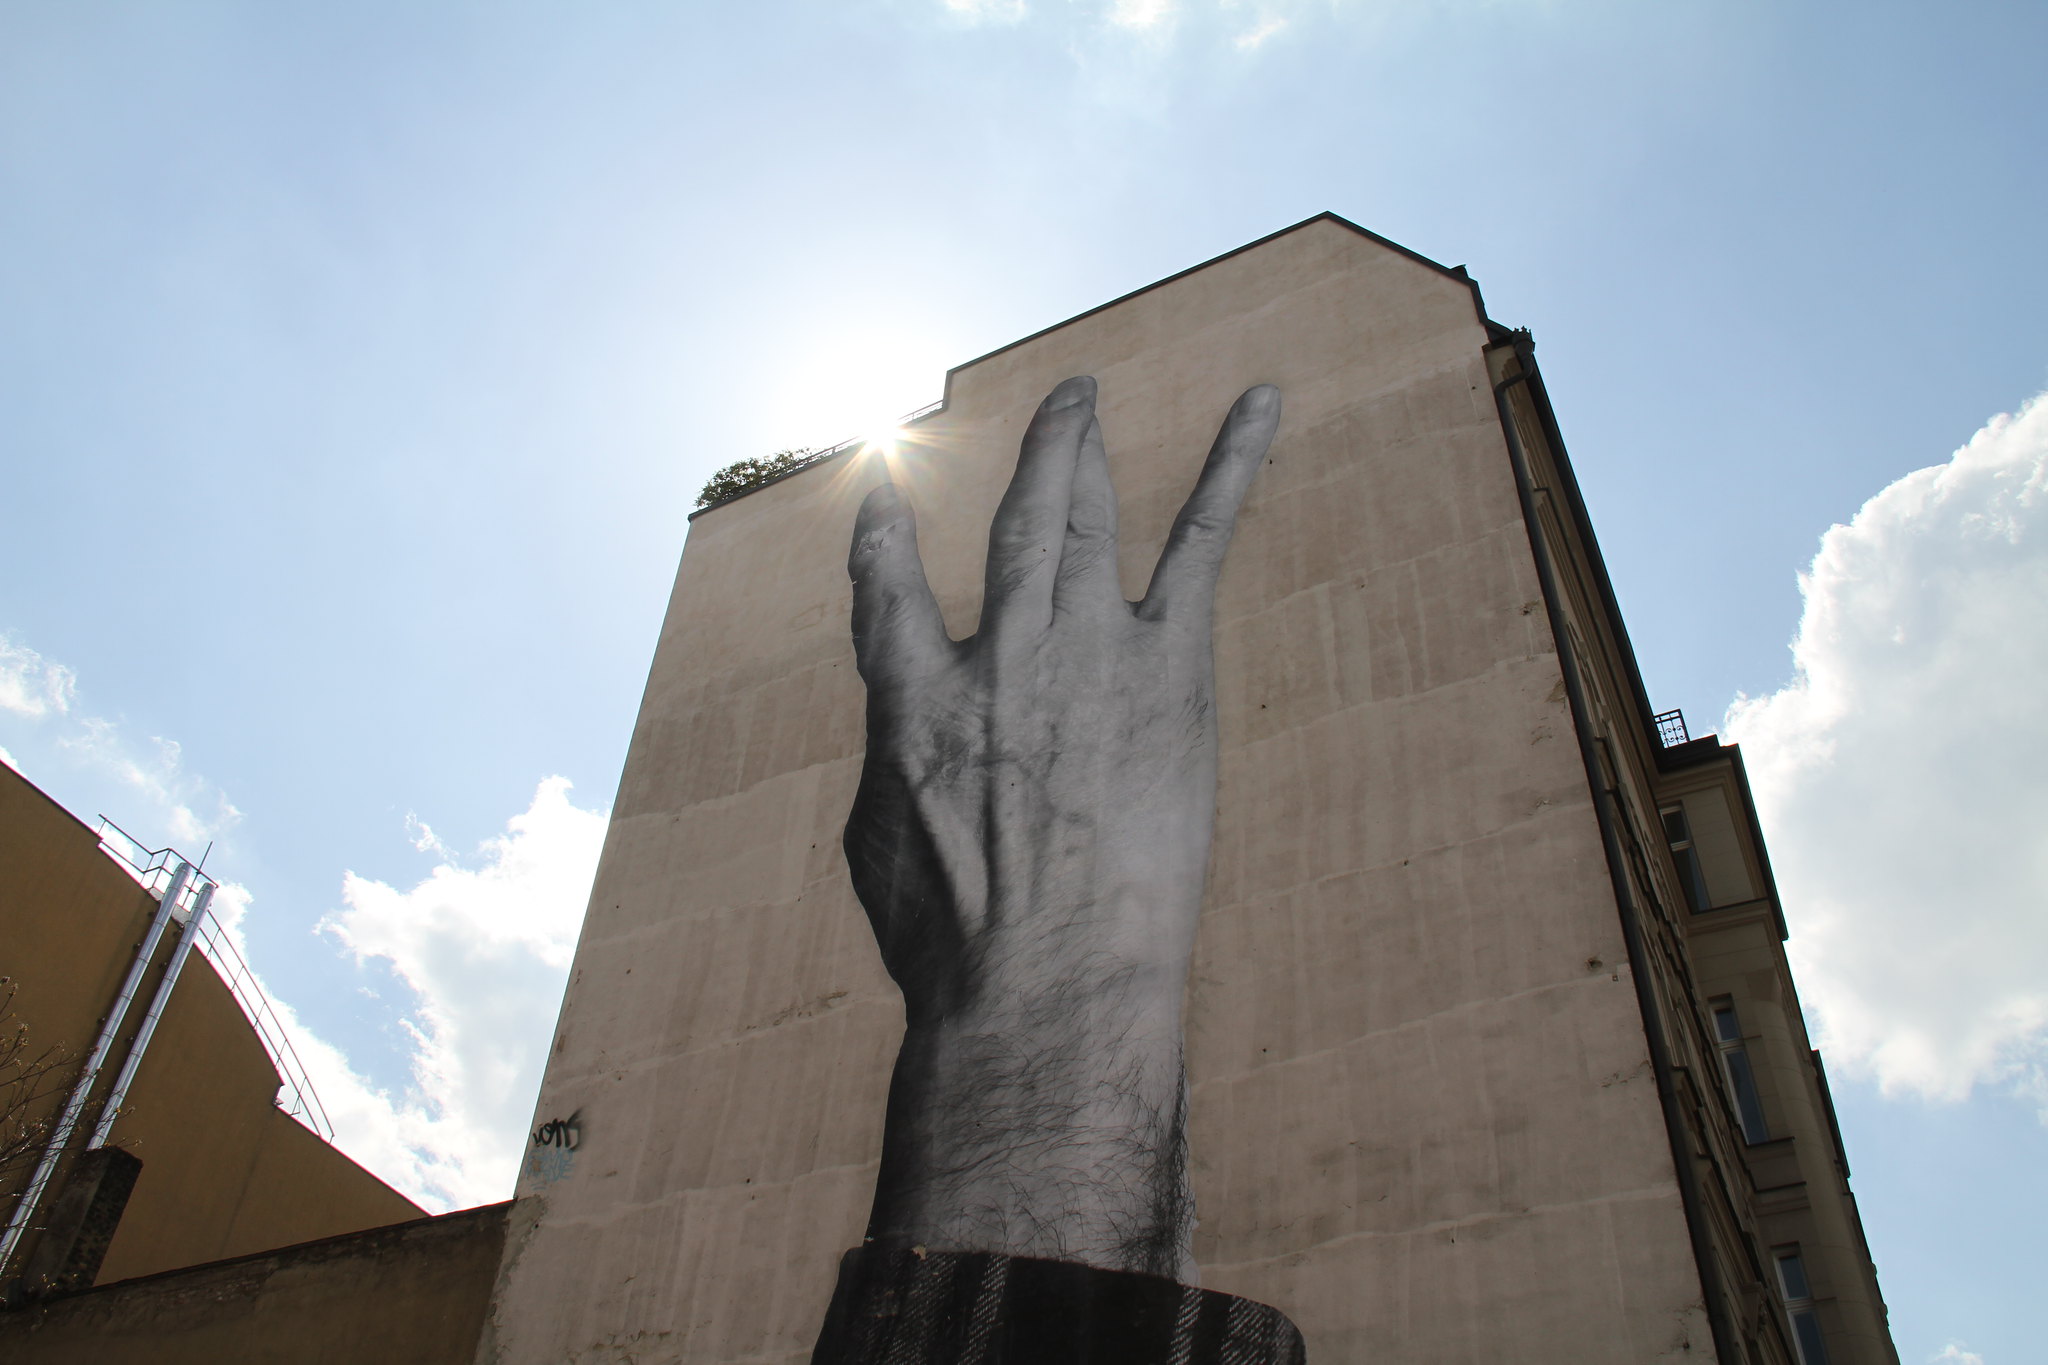 Straßen Kunst aus Berlin Mitte